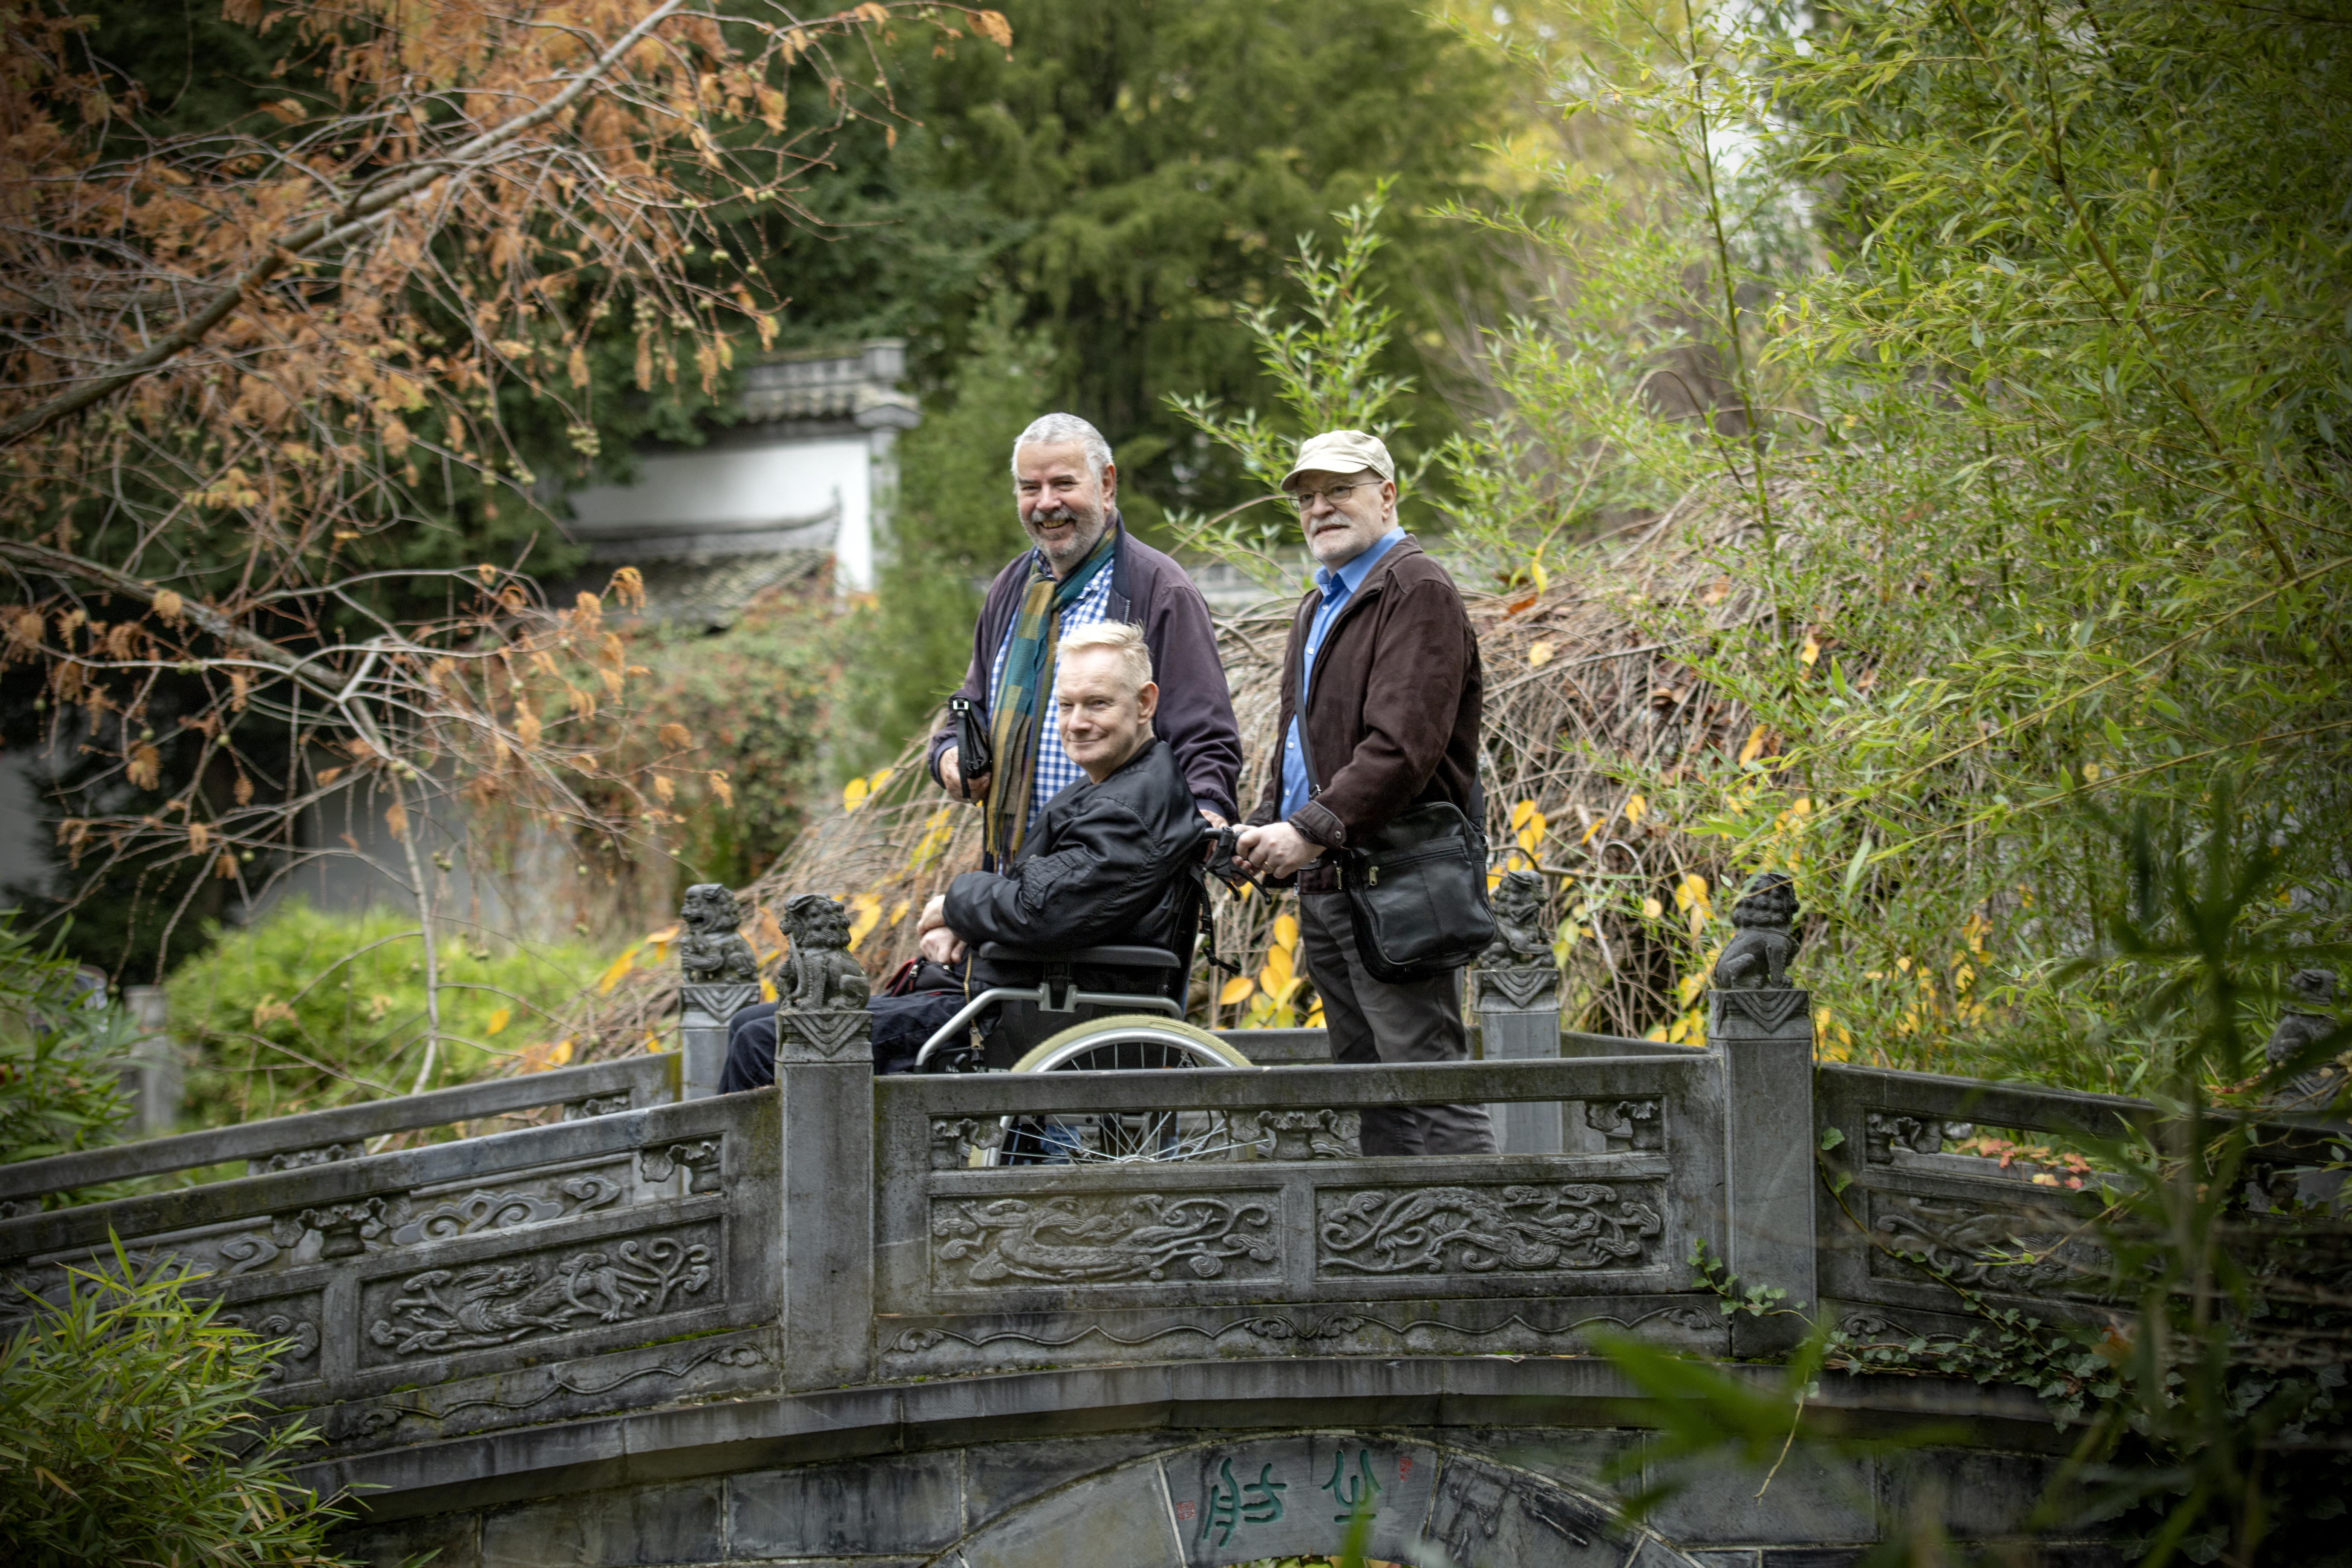 Antonio, Bernd und Detlef sind auf einer kleinen Brücke in einem Garten. Antonio hält Bernds Rollstuhl. Alle drei blicken über ihre linke Schulter in die Kamera